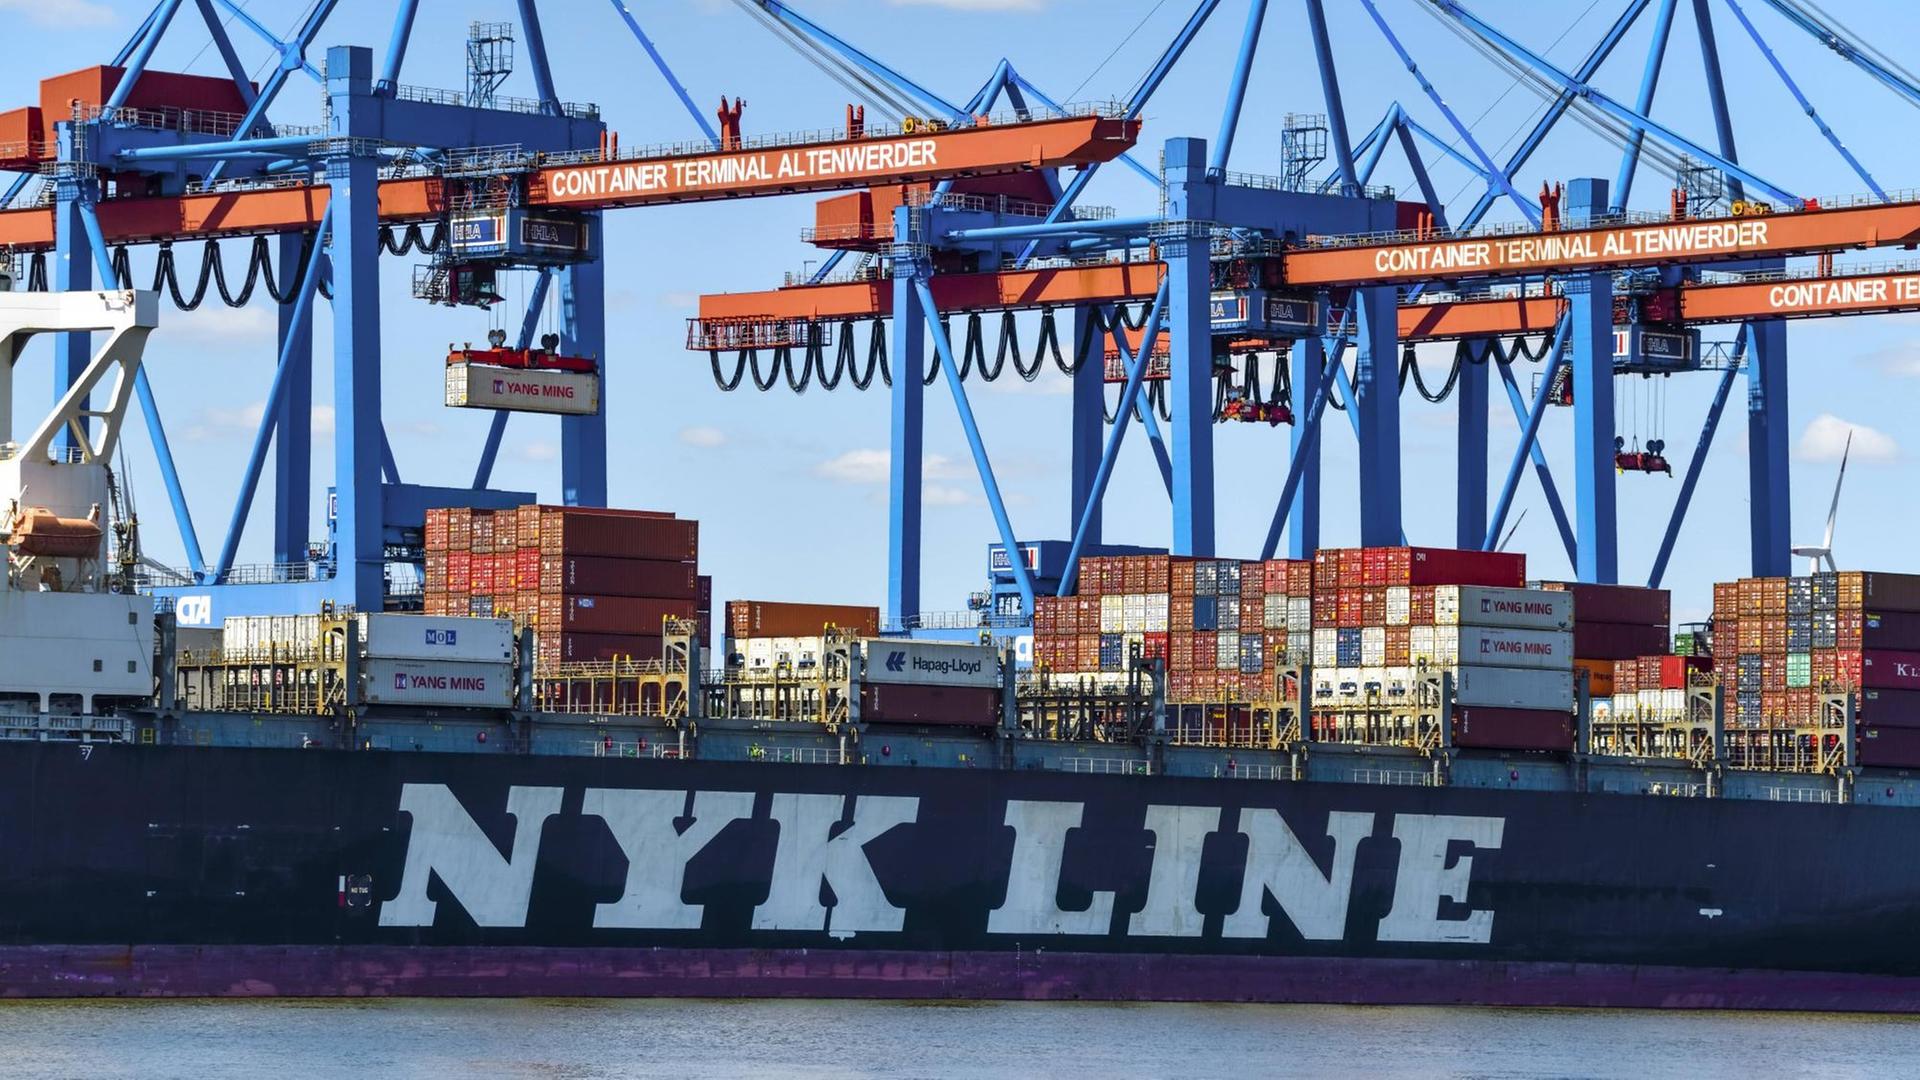 Ein Containerschiff der japanischen NYK Line am Containerterminal Altenwerder in Hamburg.